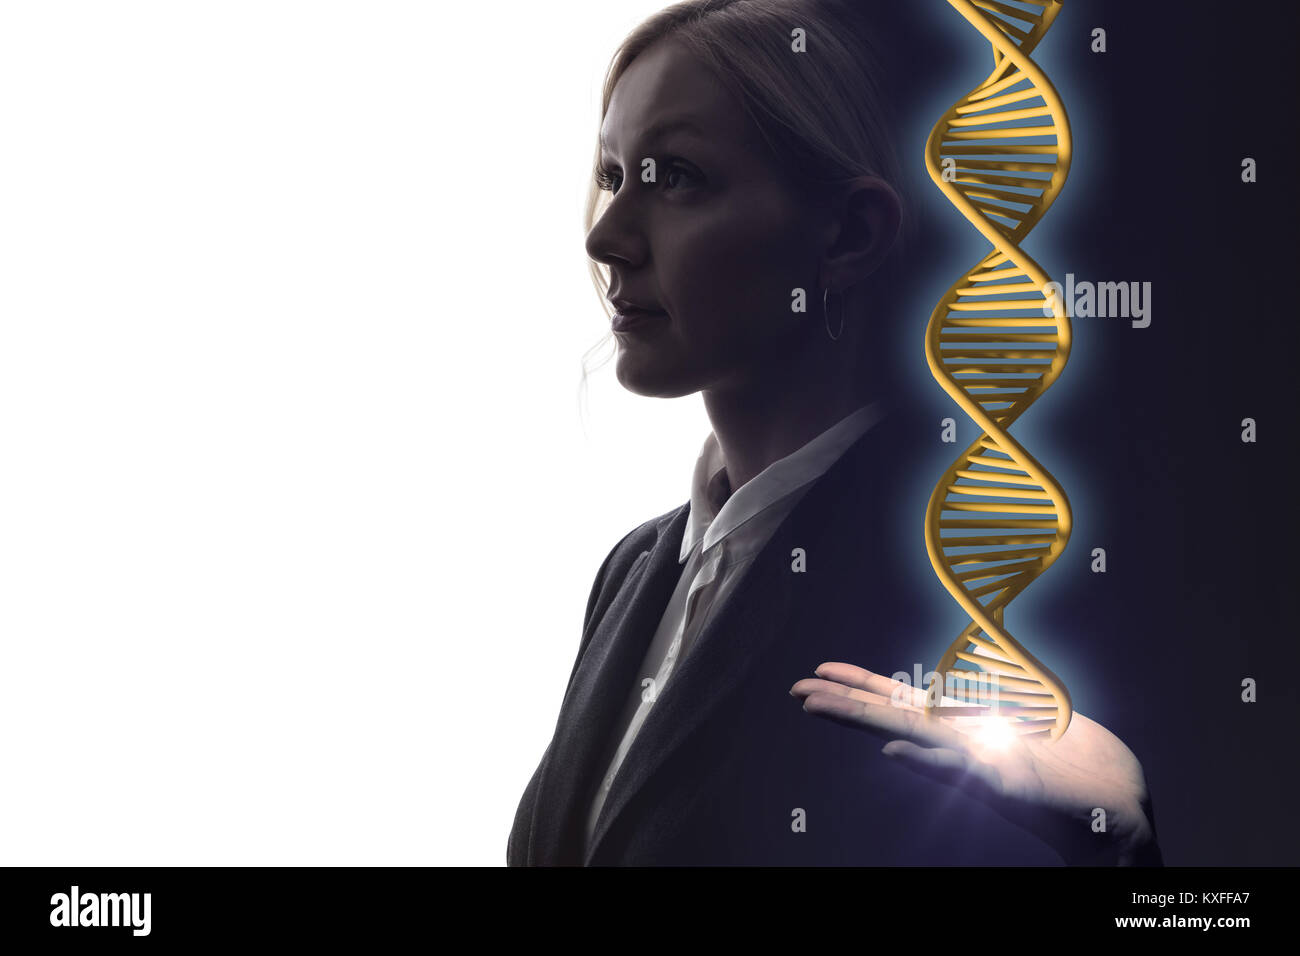 genetic engineering concept. 3D rendering. Stock Photo